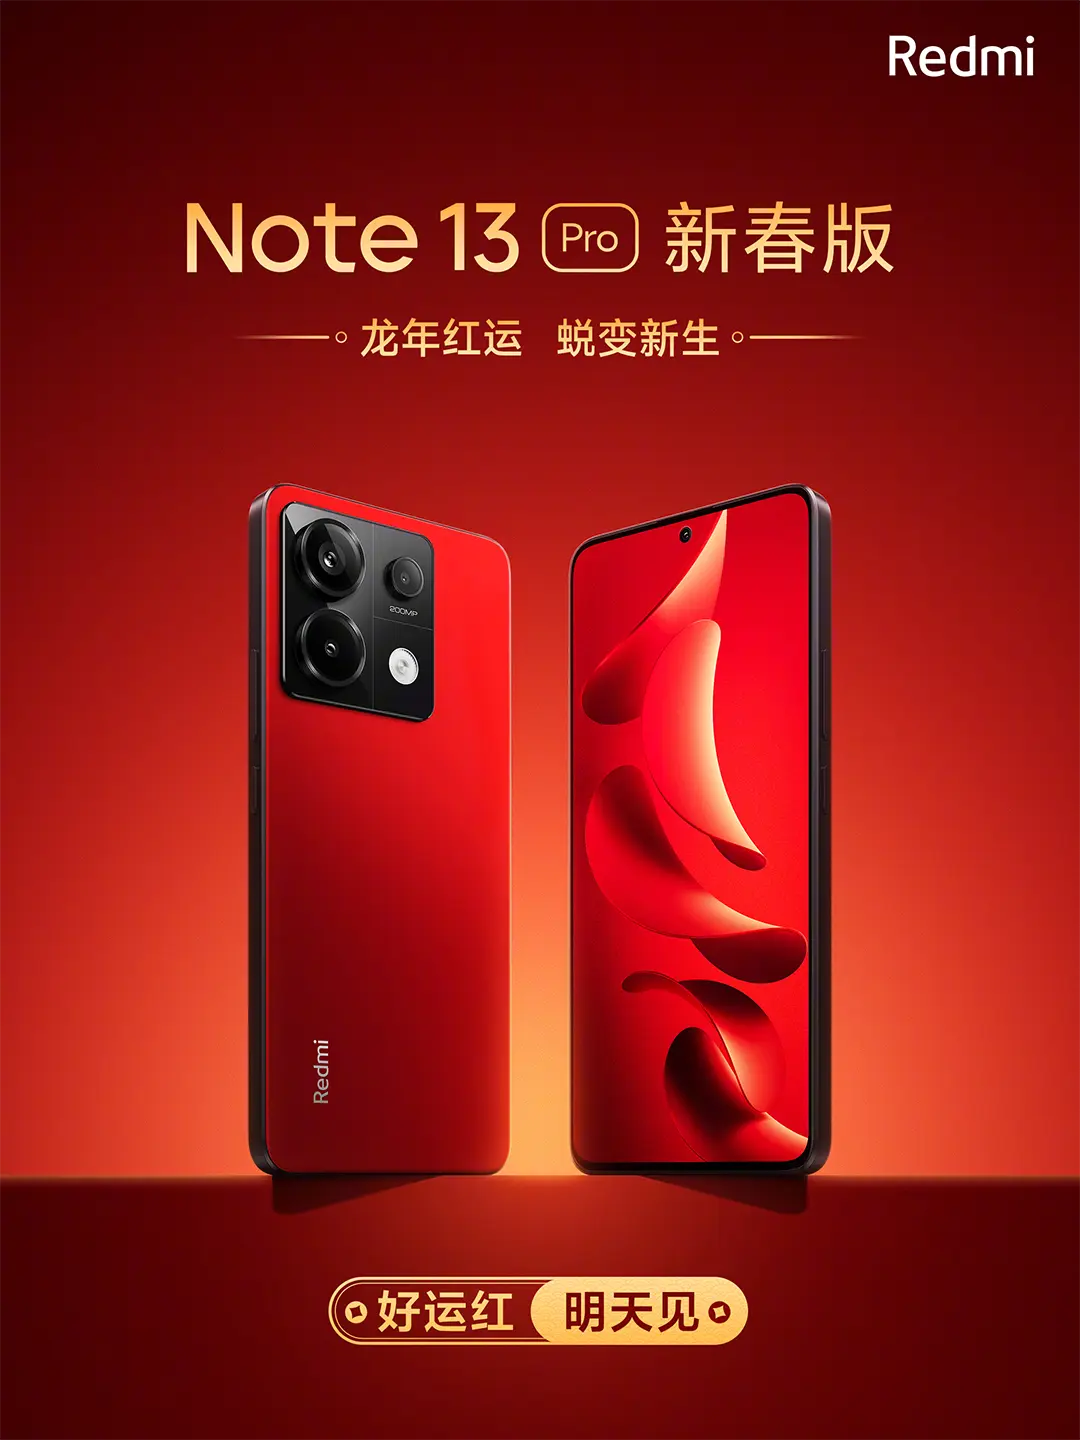 Gyönyörű vörös színben is lesz Kínában Redmi Note 13 Pro